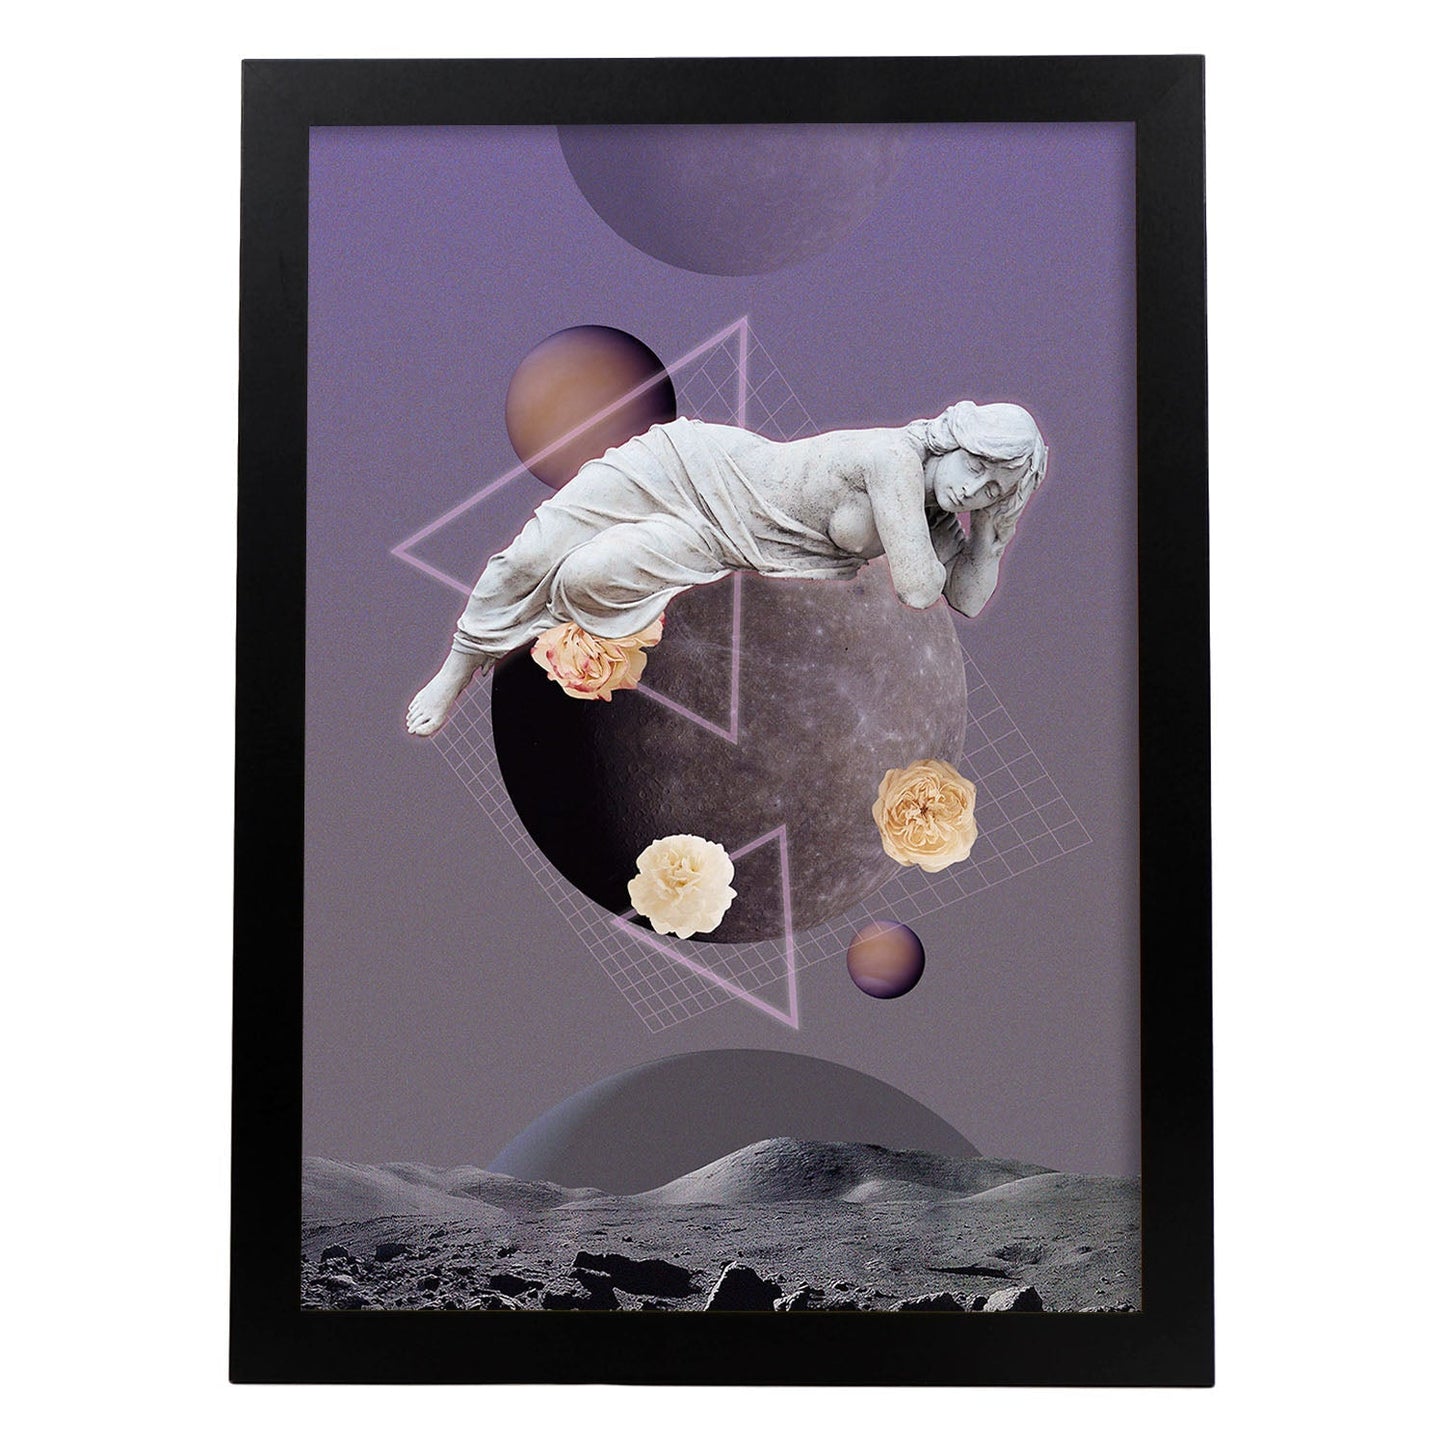 Lamina artistica decorativa con ilustración de Collage surrealista 27 estilo Collage-Artwork-Nacnic-A3-Marco Negro-Nacnic Estudio SL